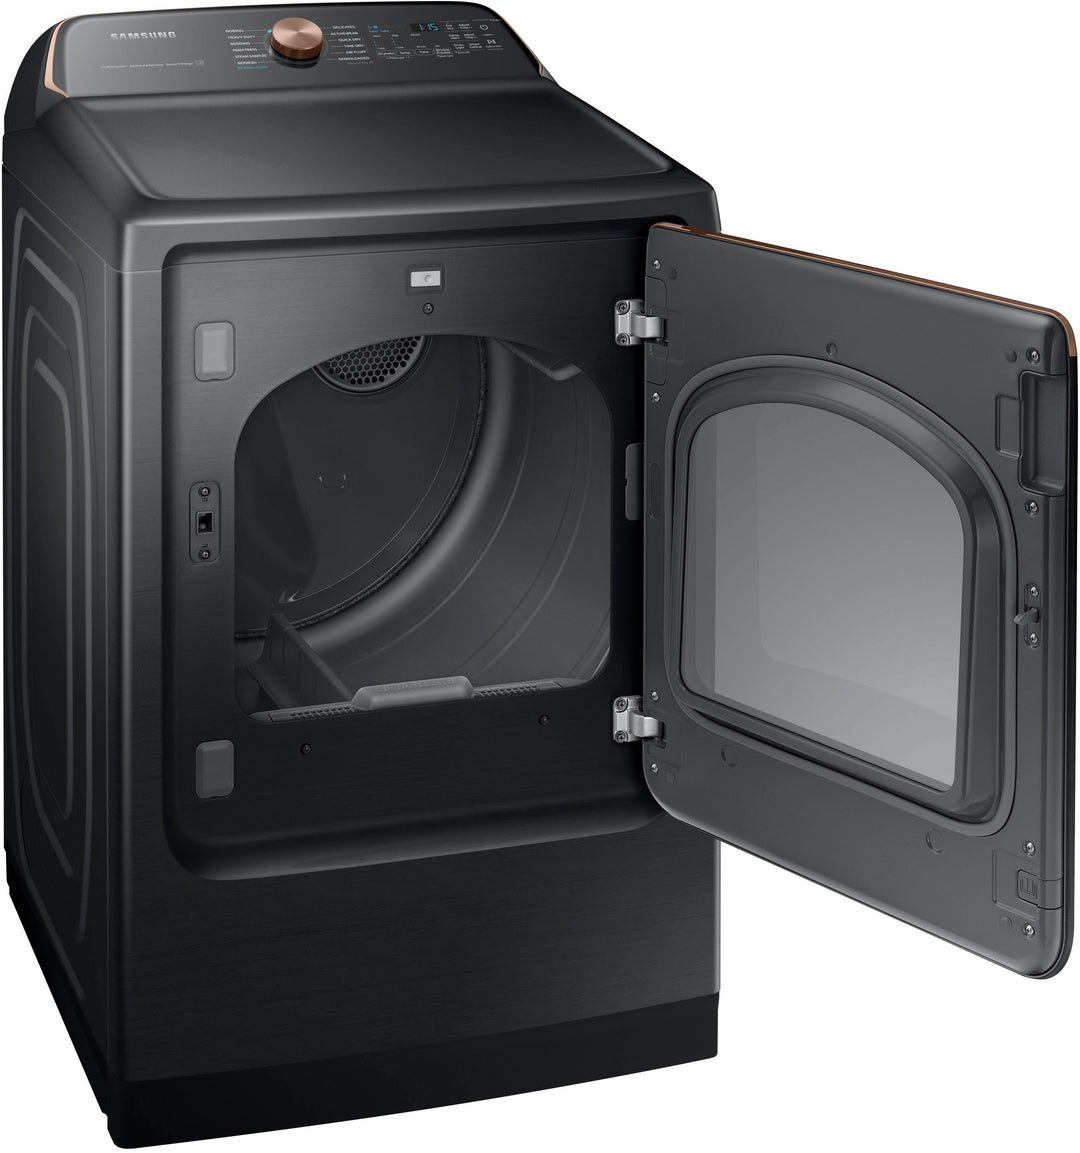 Samsung - 7.4 cu. ft. Smart Gas Dryer with Steam Sanitize+ - Brushed black_12